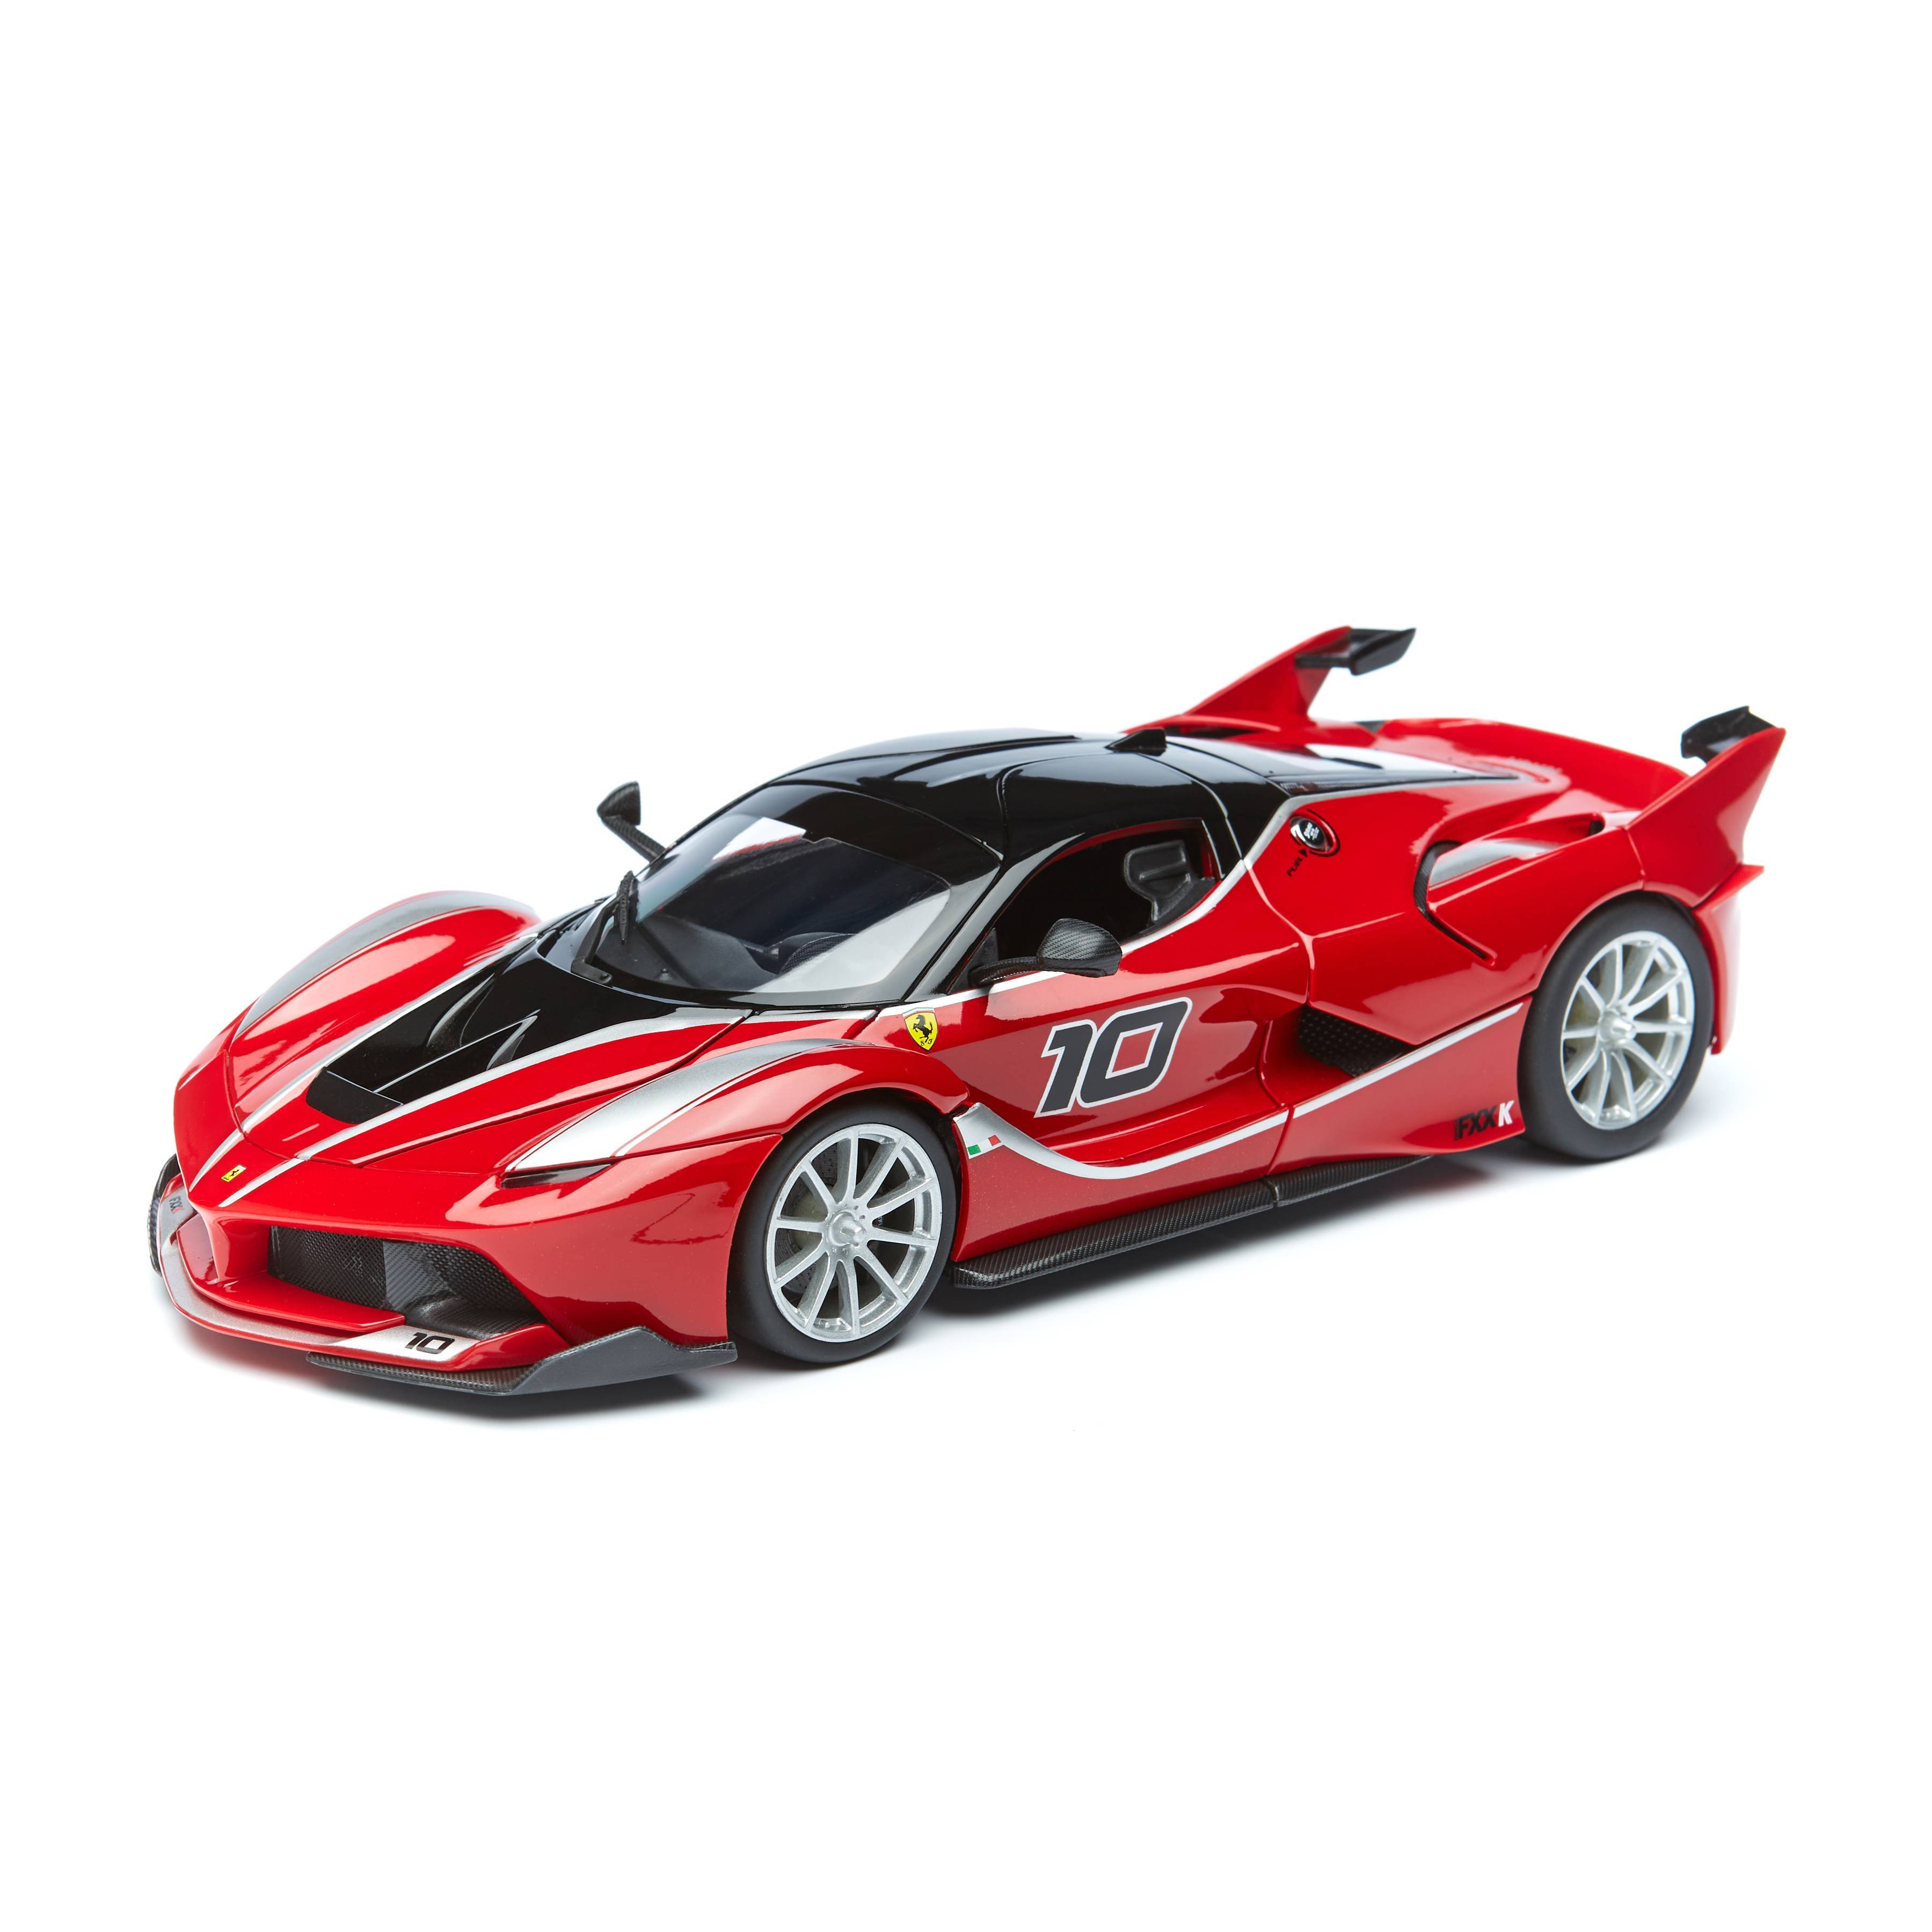 Bburago Коллекционная Машинка 1:18 Ferrari FXX К, красный, 18-16010 автомобиль bburago гоночный перевозчик ferrari красный 18 31202